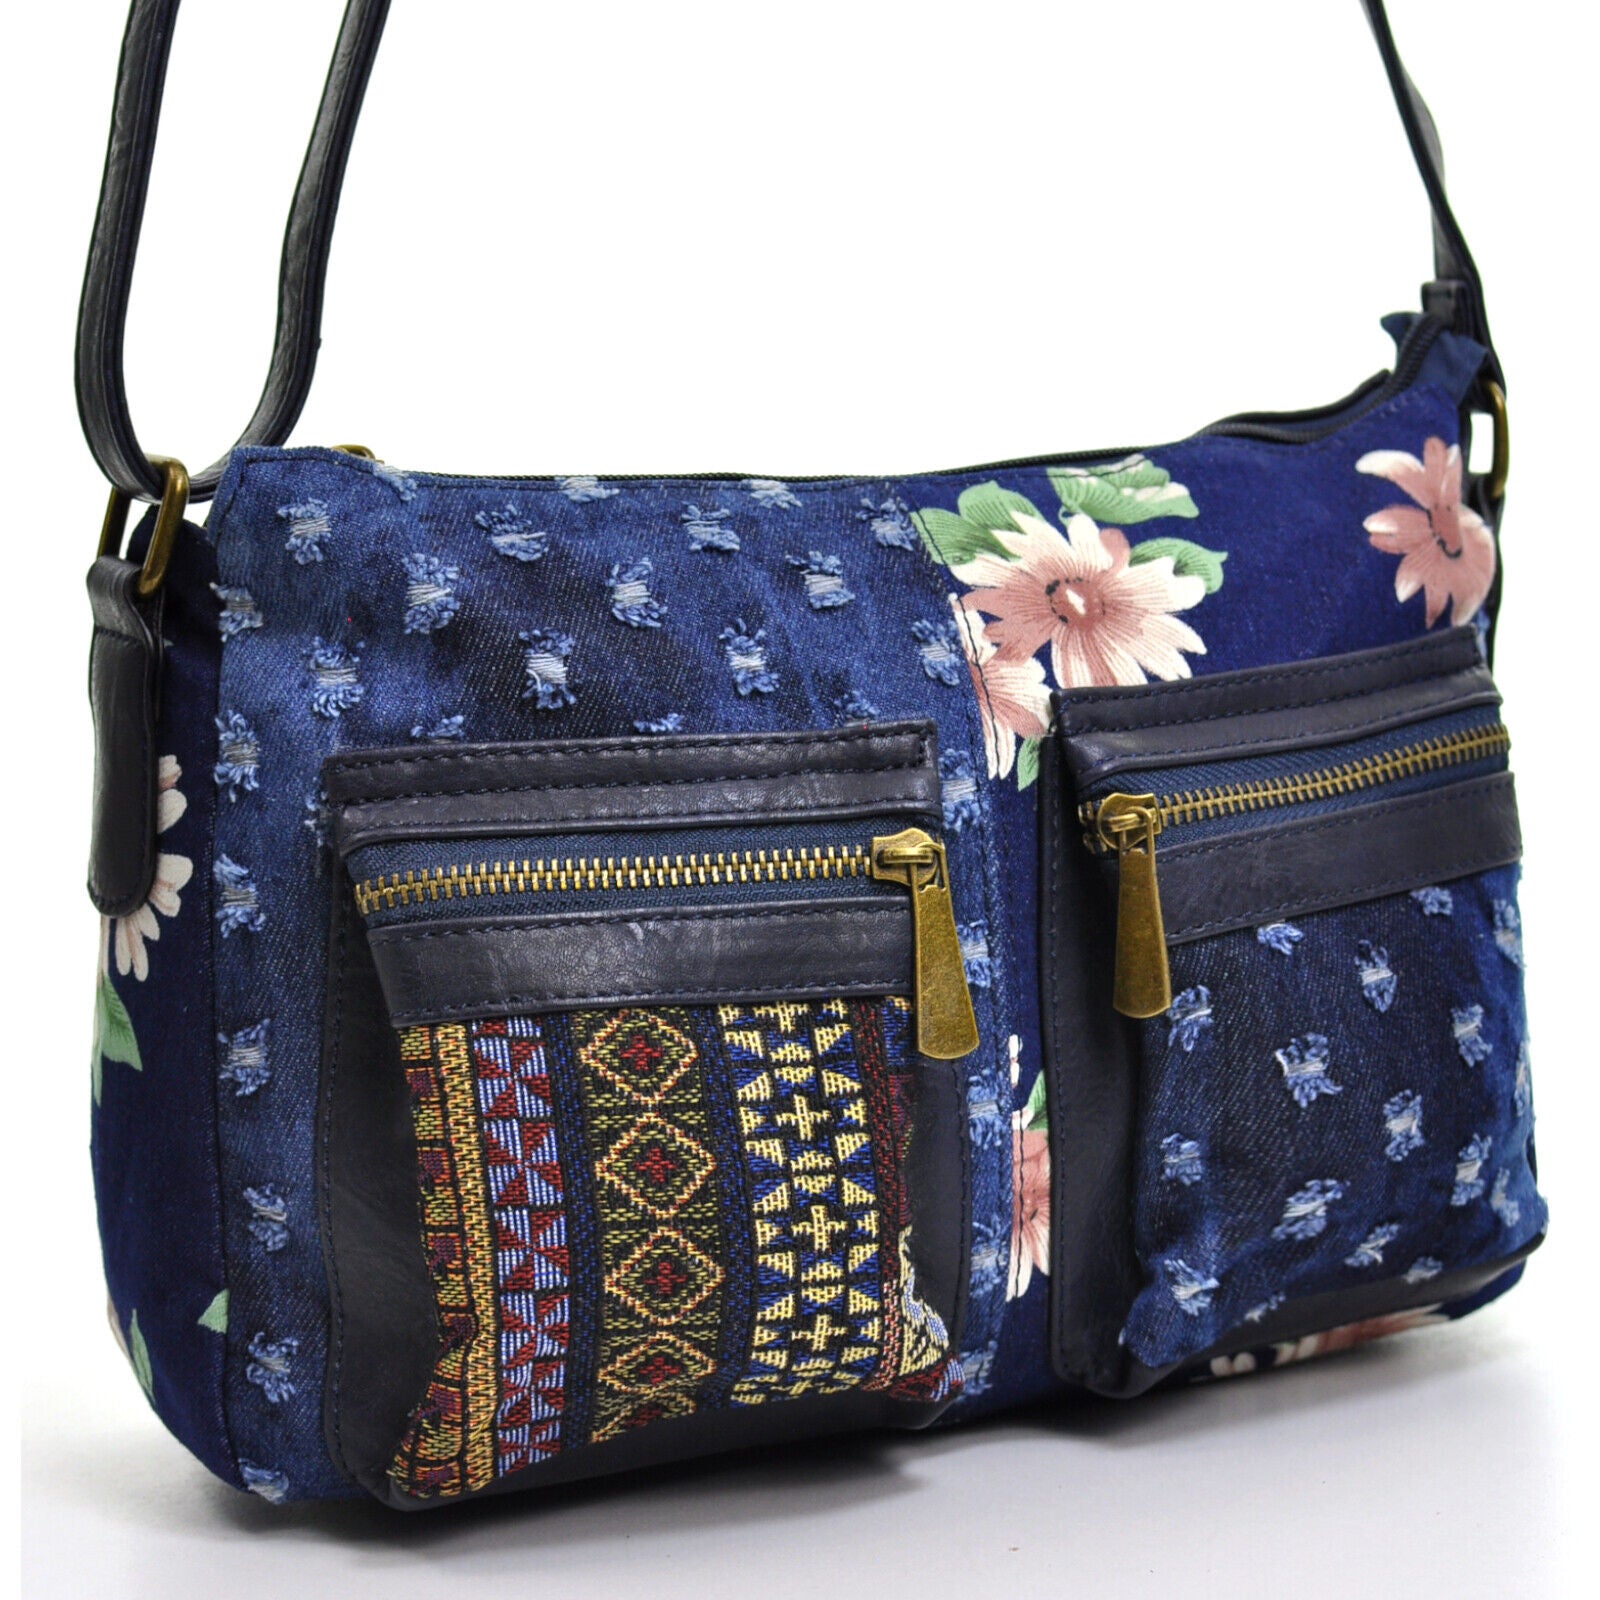 Tracolla borsa jeans artigianale messenger donna vintage tasche fiori fiorata